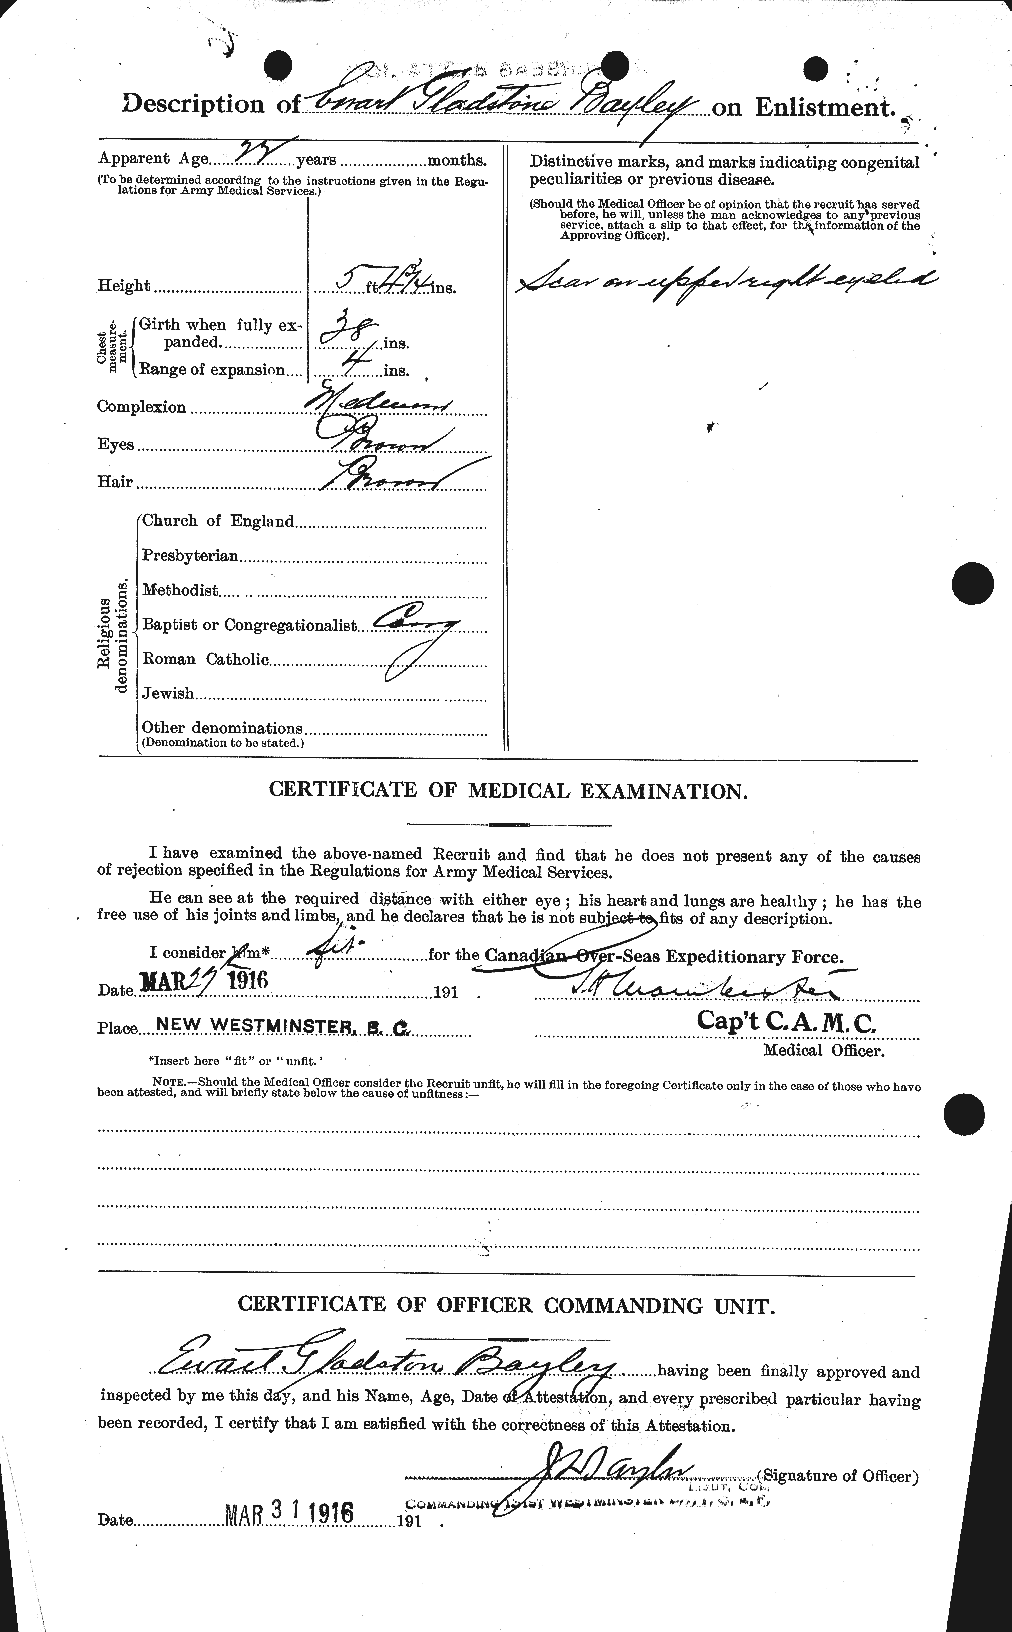 Dossiers du Personnel de la Première Guerre mondiale - CEC 229621b